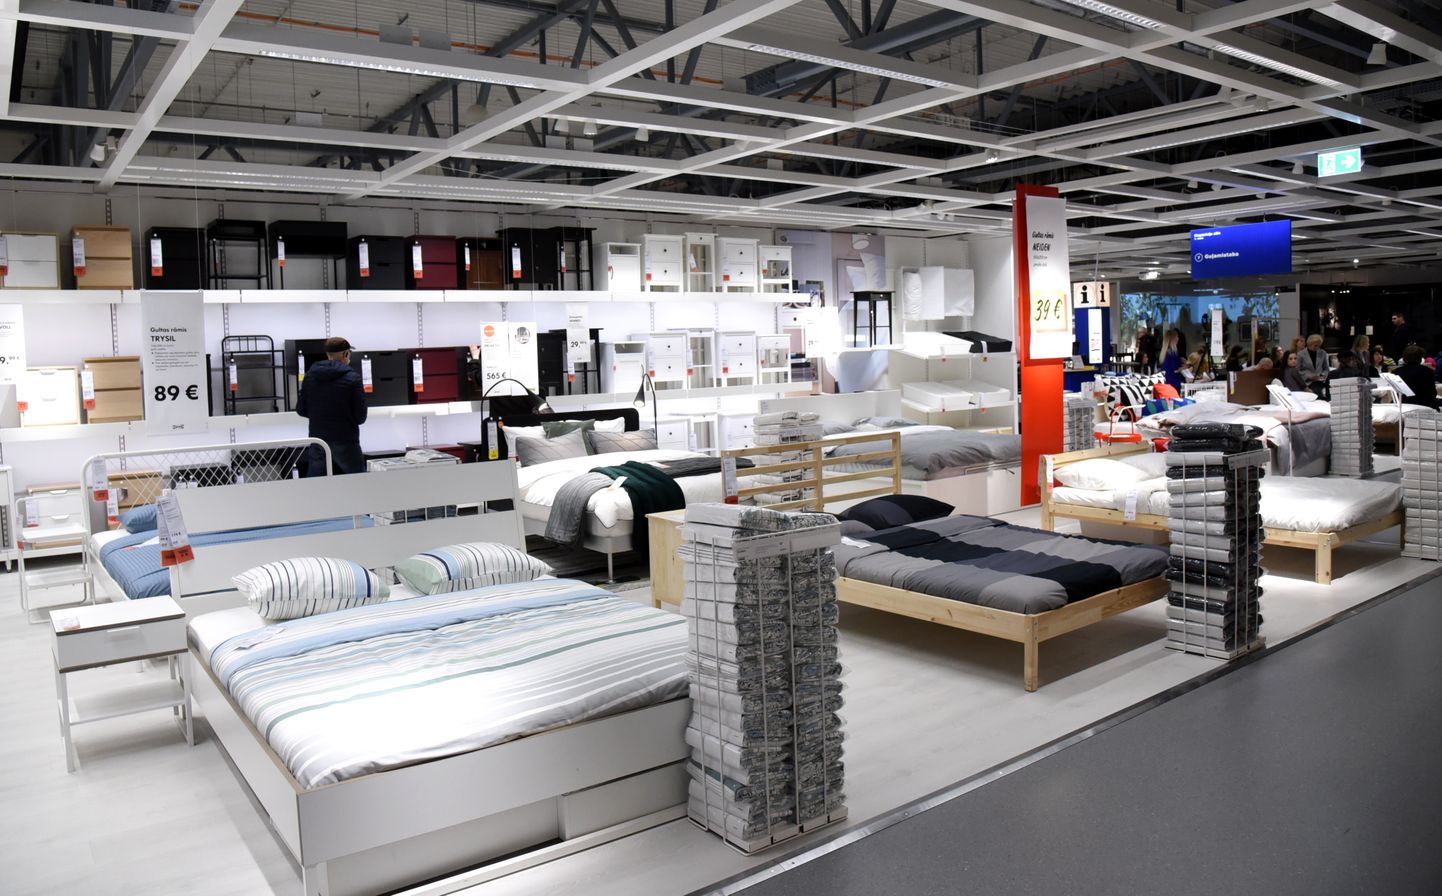 Zviedrijas mājokļu labiekārtošanas preču kompānijas "IKEA" veikala telpas.